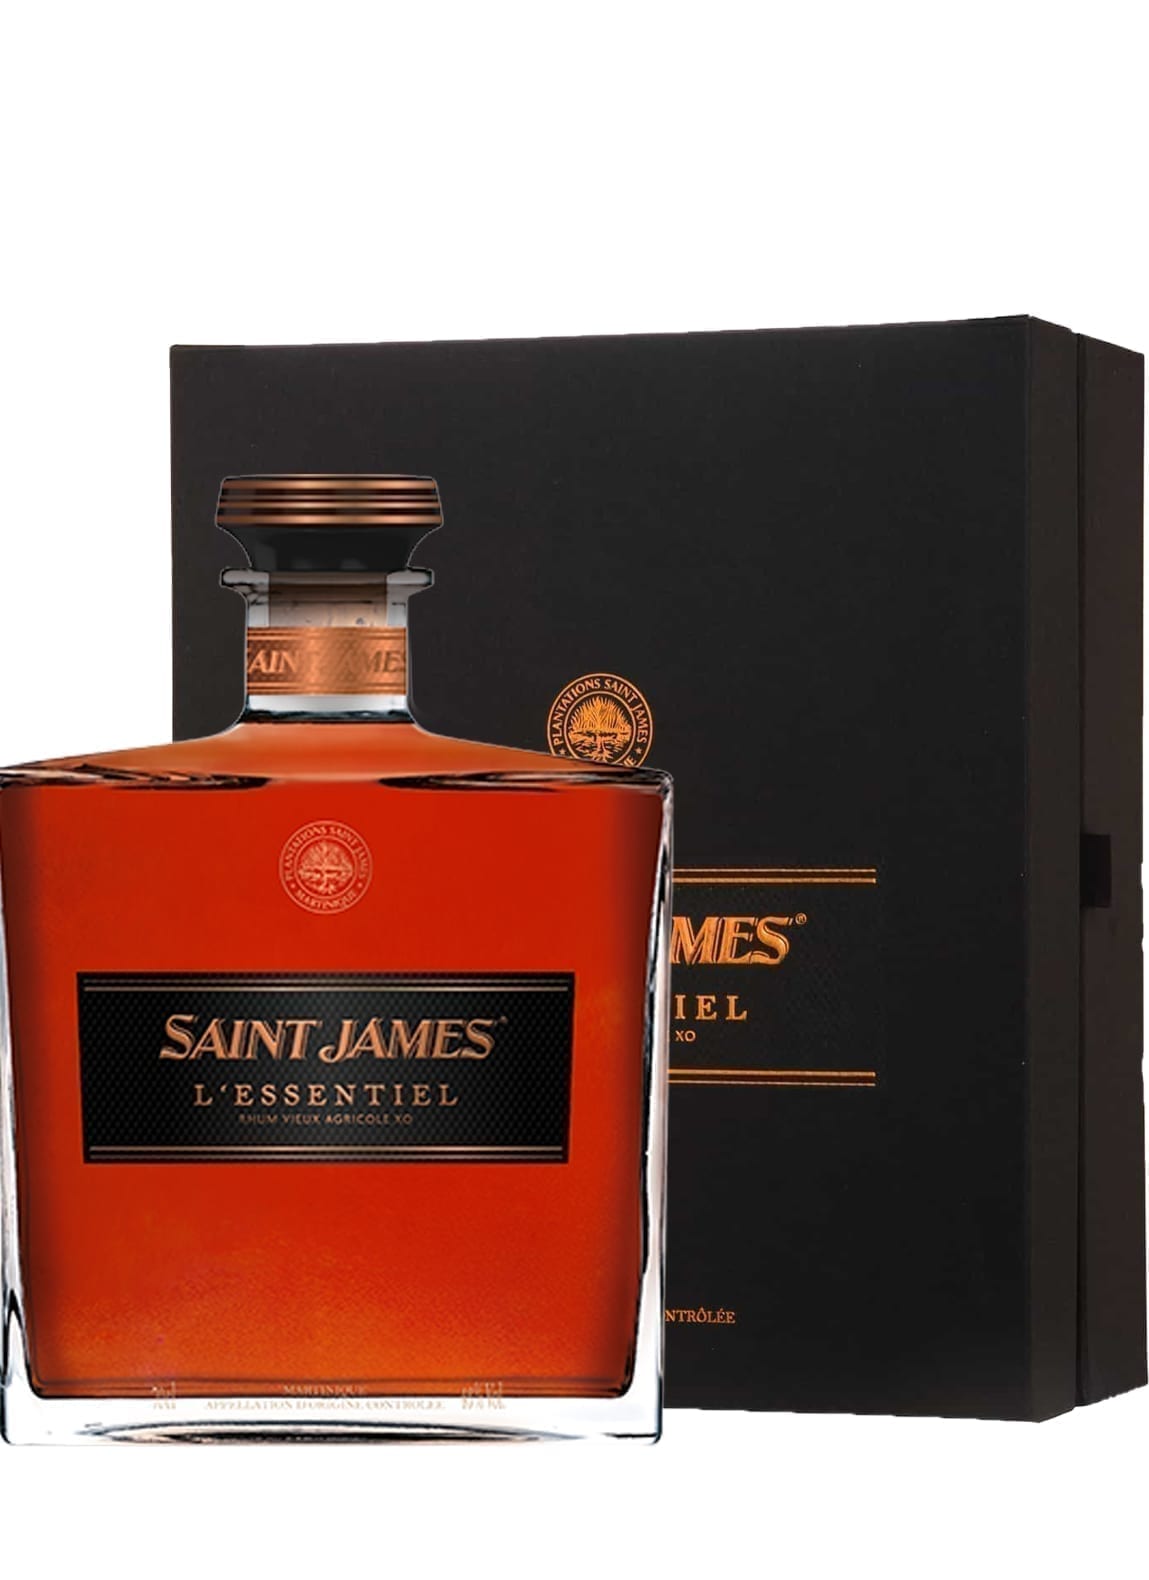 St James l'Essentiel (1998, 2000, 2003 vintages) Carafe 43% 700ml